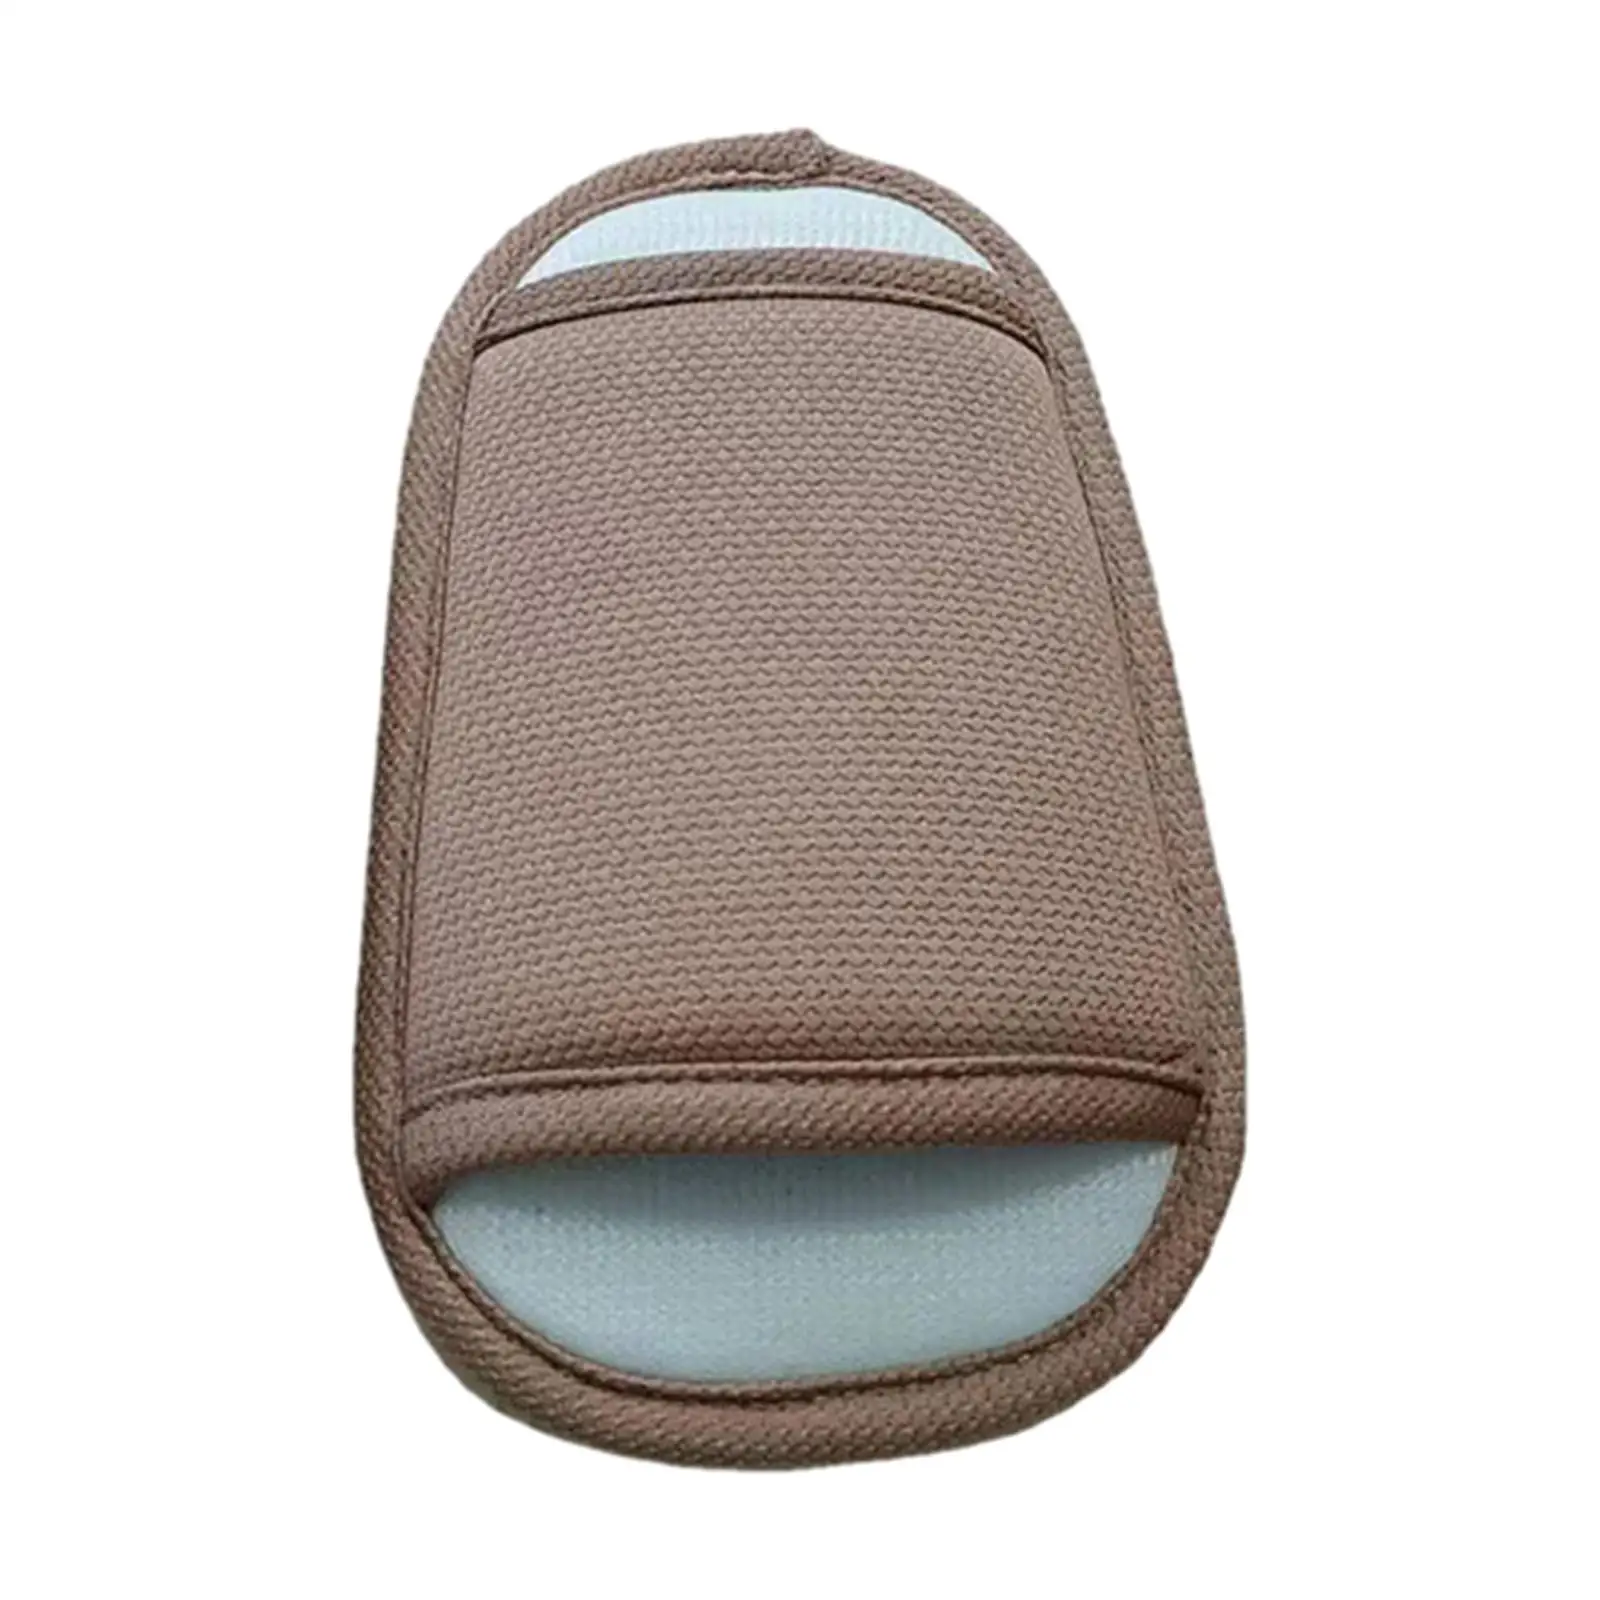 3Pcs Baby Stroller Shoulder Cover Soft Seat Belt Cushion Protector Shoulder Protector for Pram Stroller Booster Seat Infants